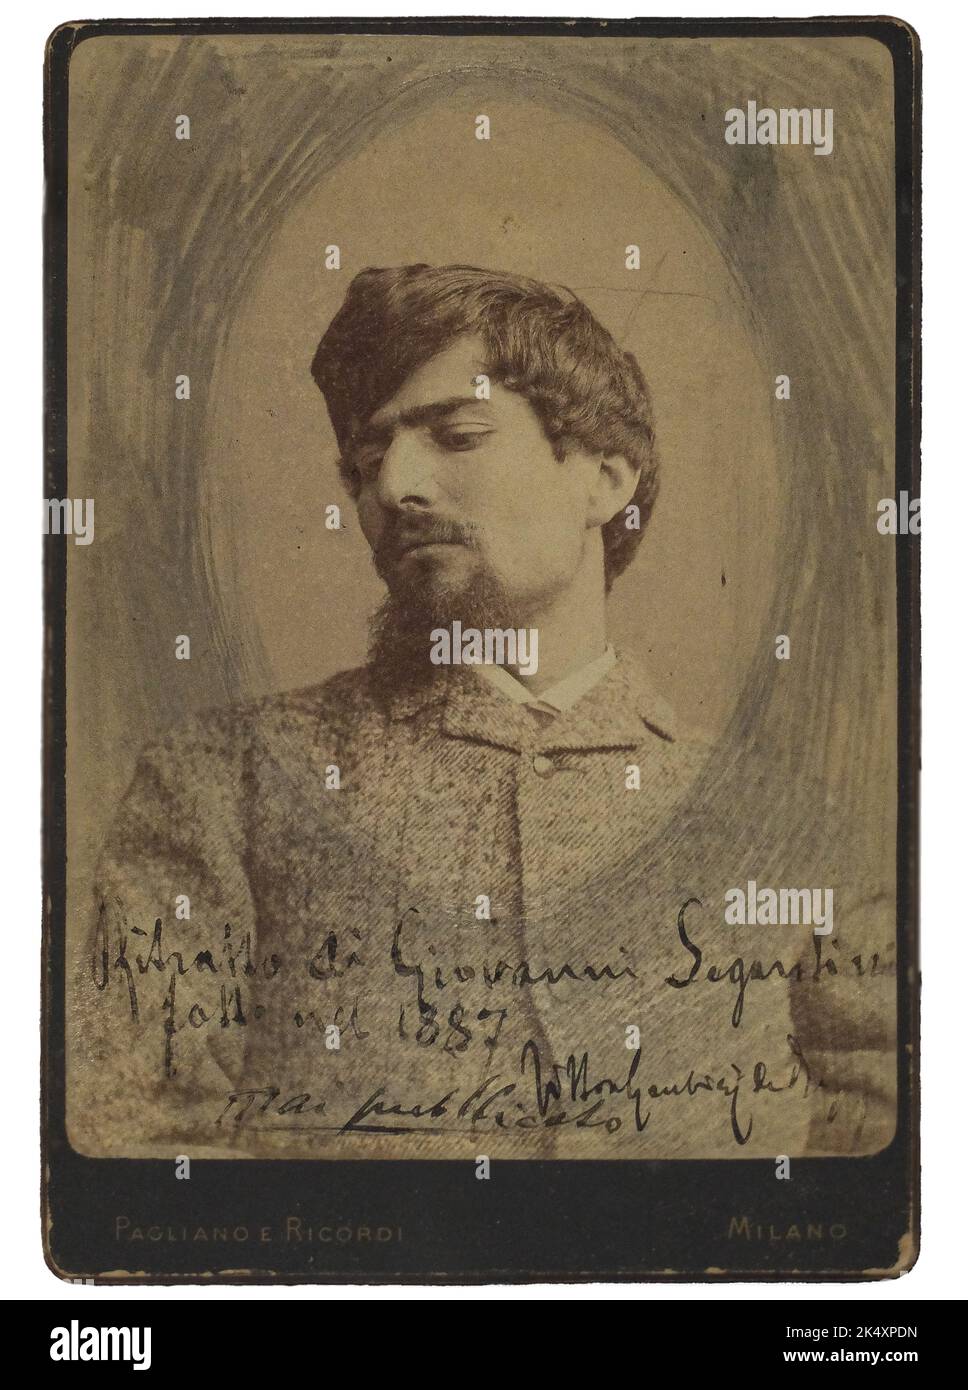 Photo portrait of the italian painter Giovanni Segantini (1858-1899), Pagliano & Ricordi studio in Milan, 1887. Stock Photo